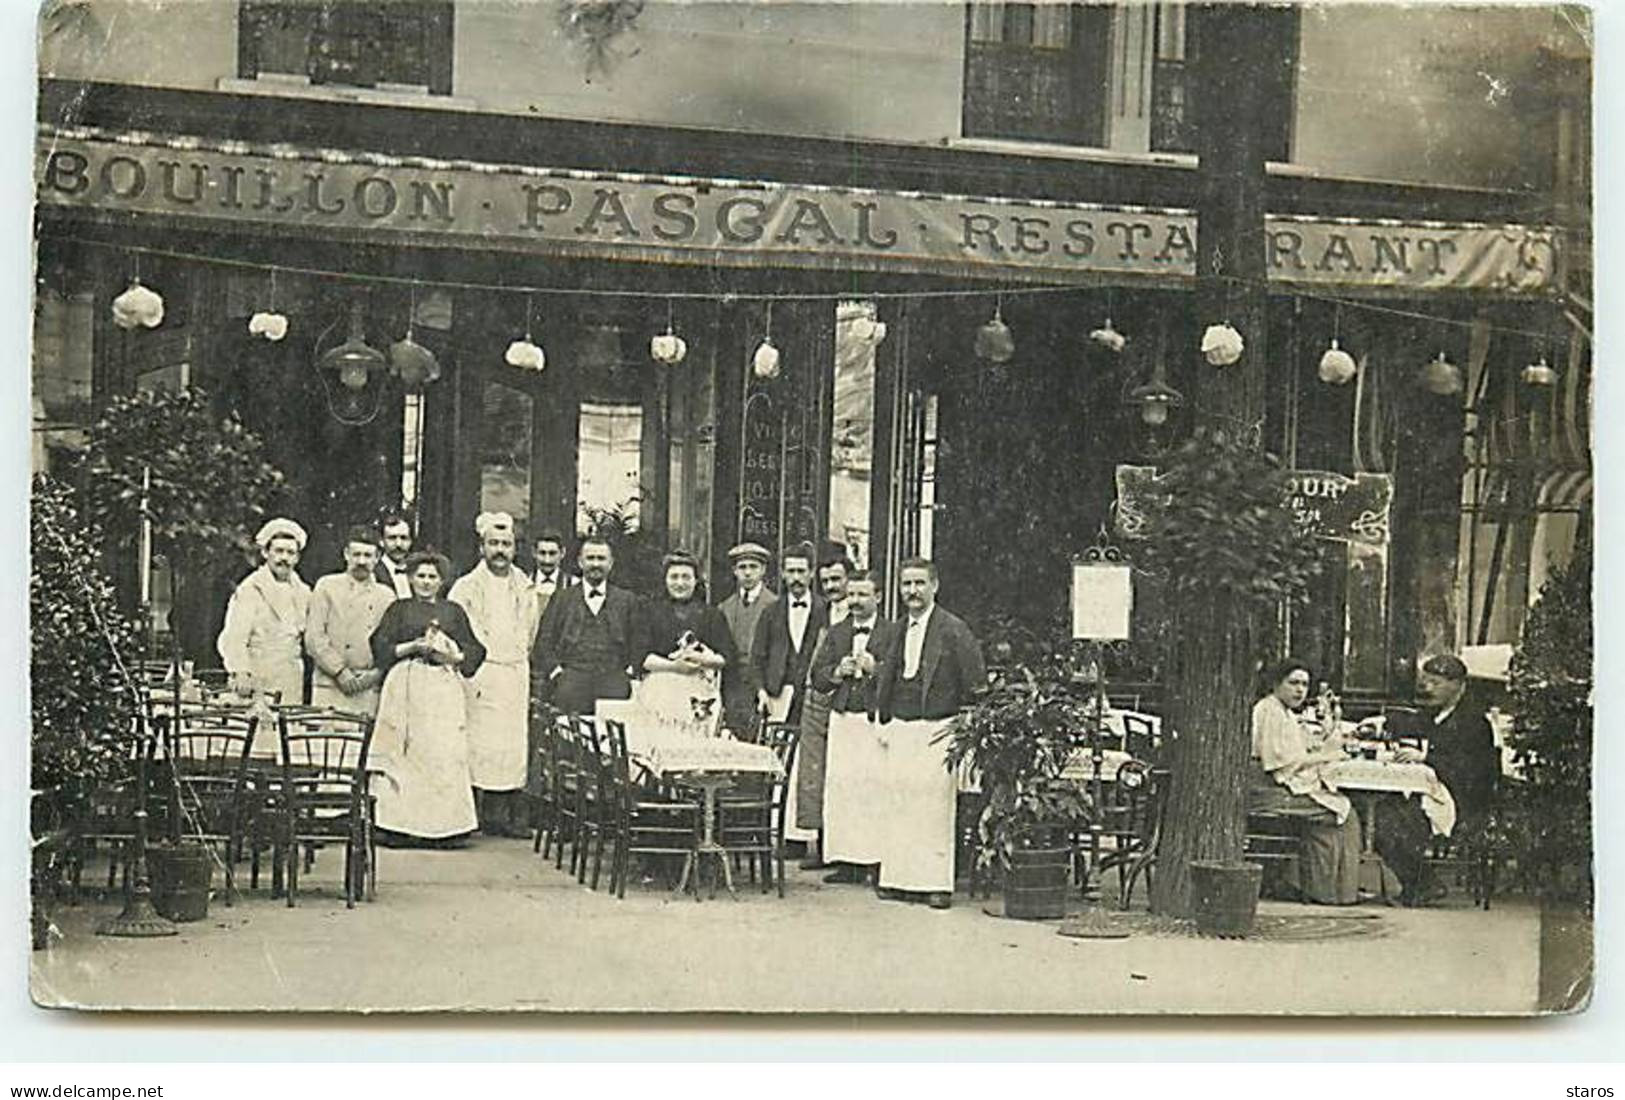 Carte Photo - PARIS - Restaurant Bouillon Pascal - Groupe De Personnel - Cafés, Hotels, Restaurants